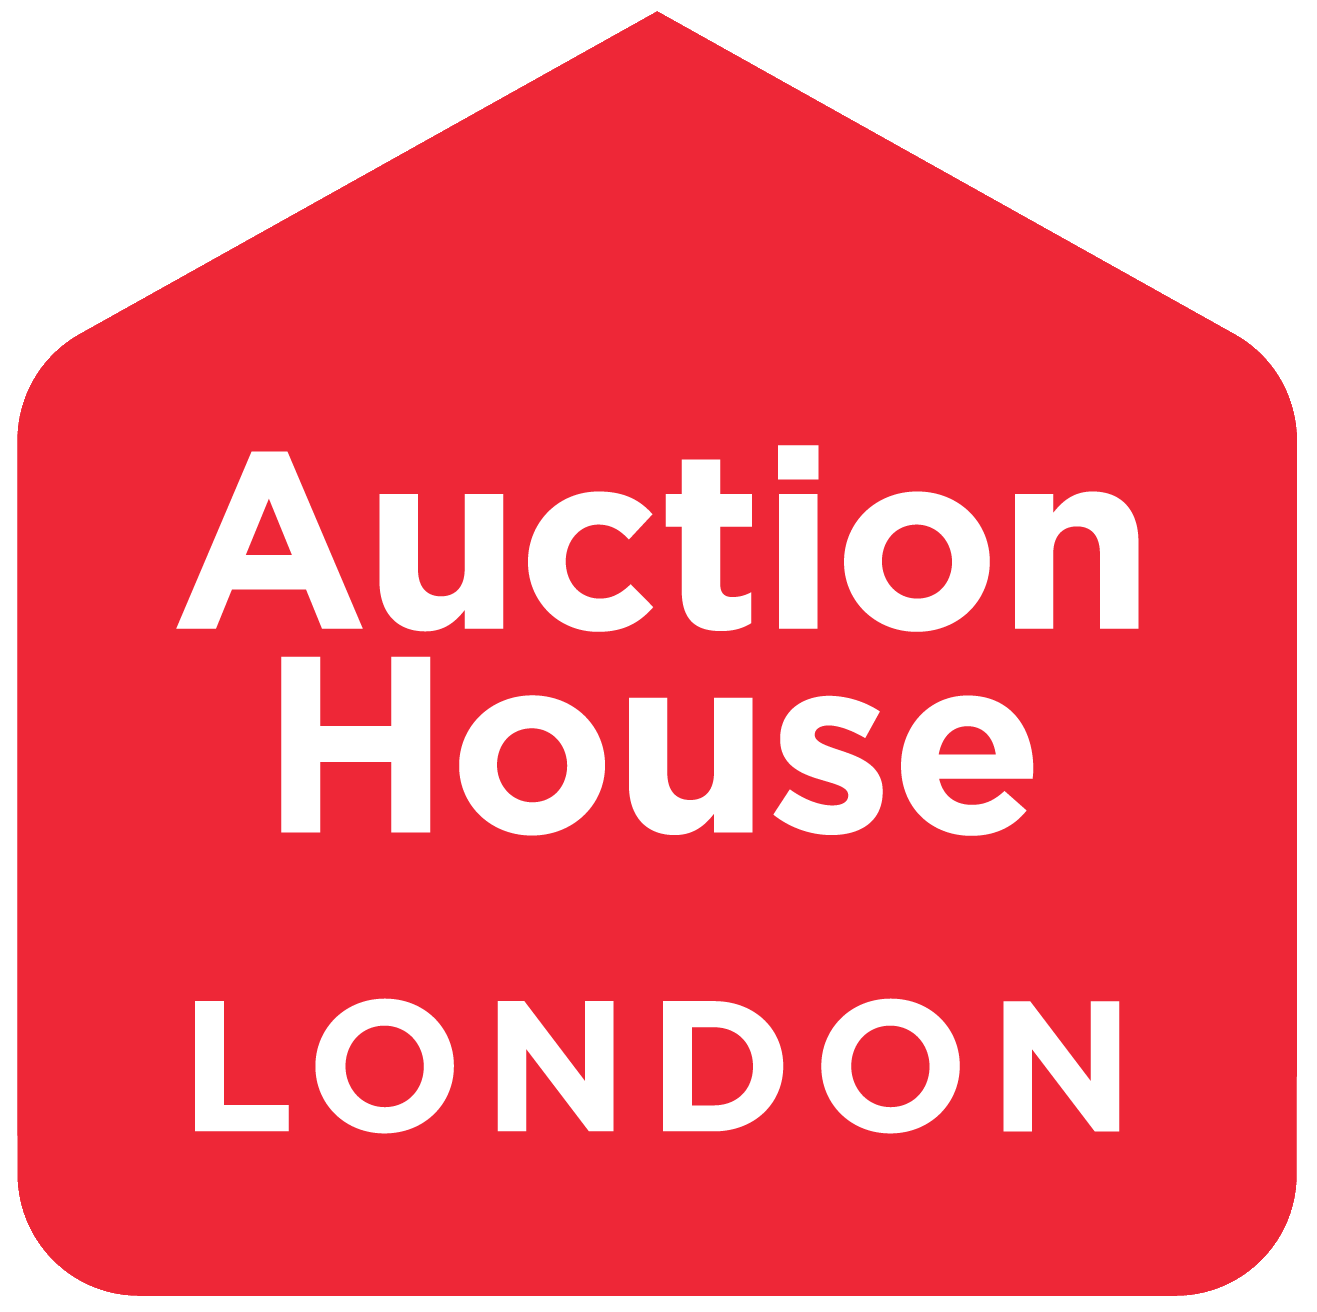 Auction House London